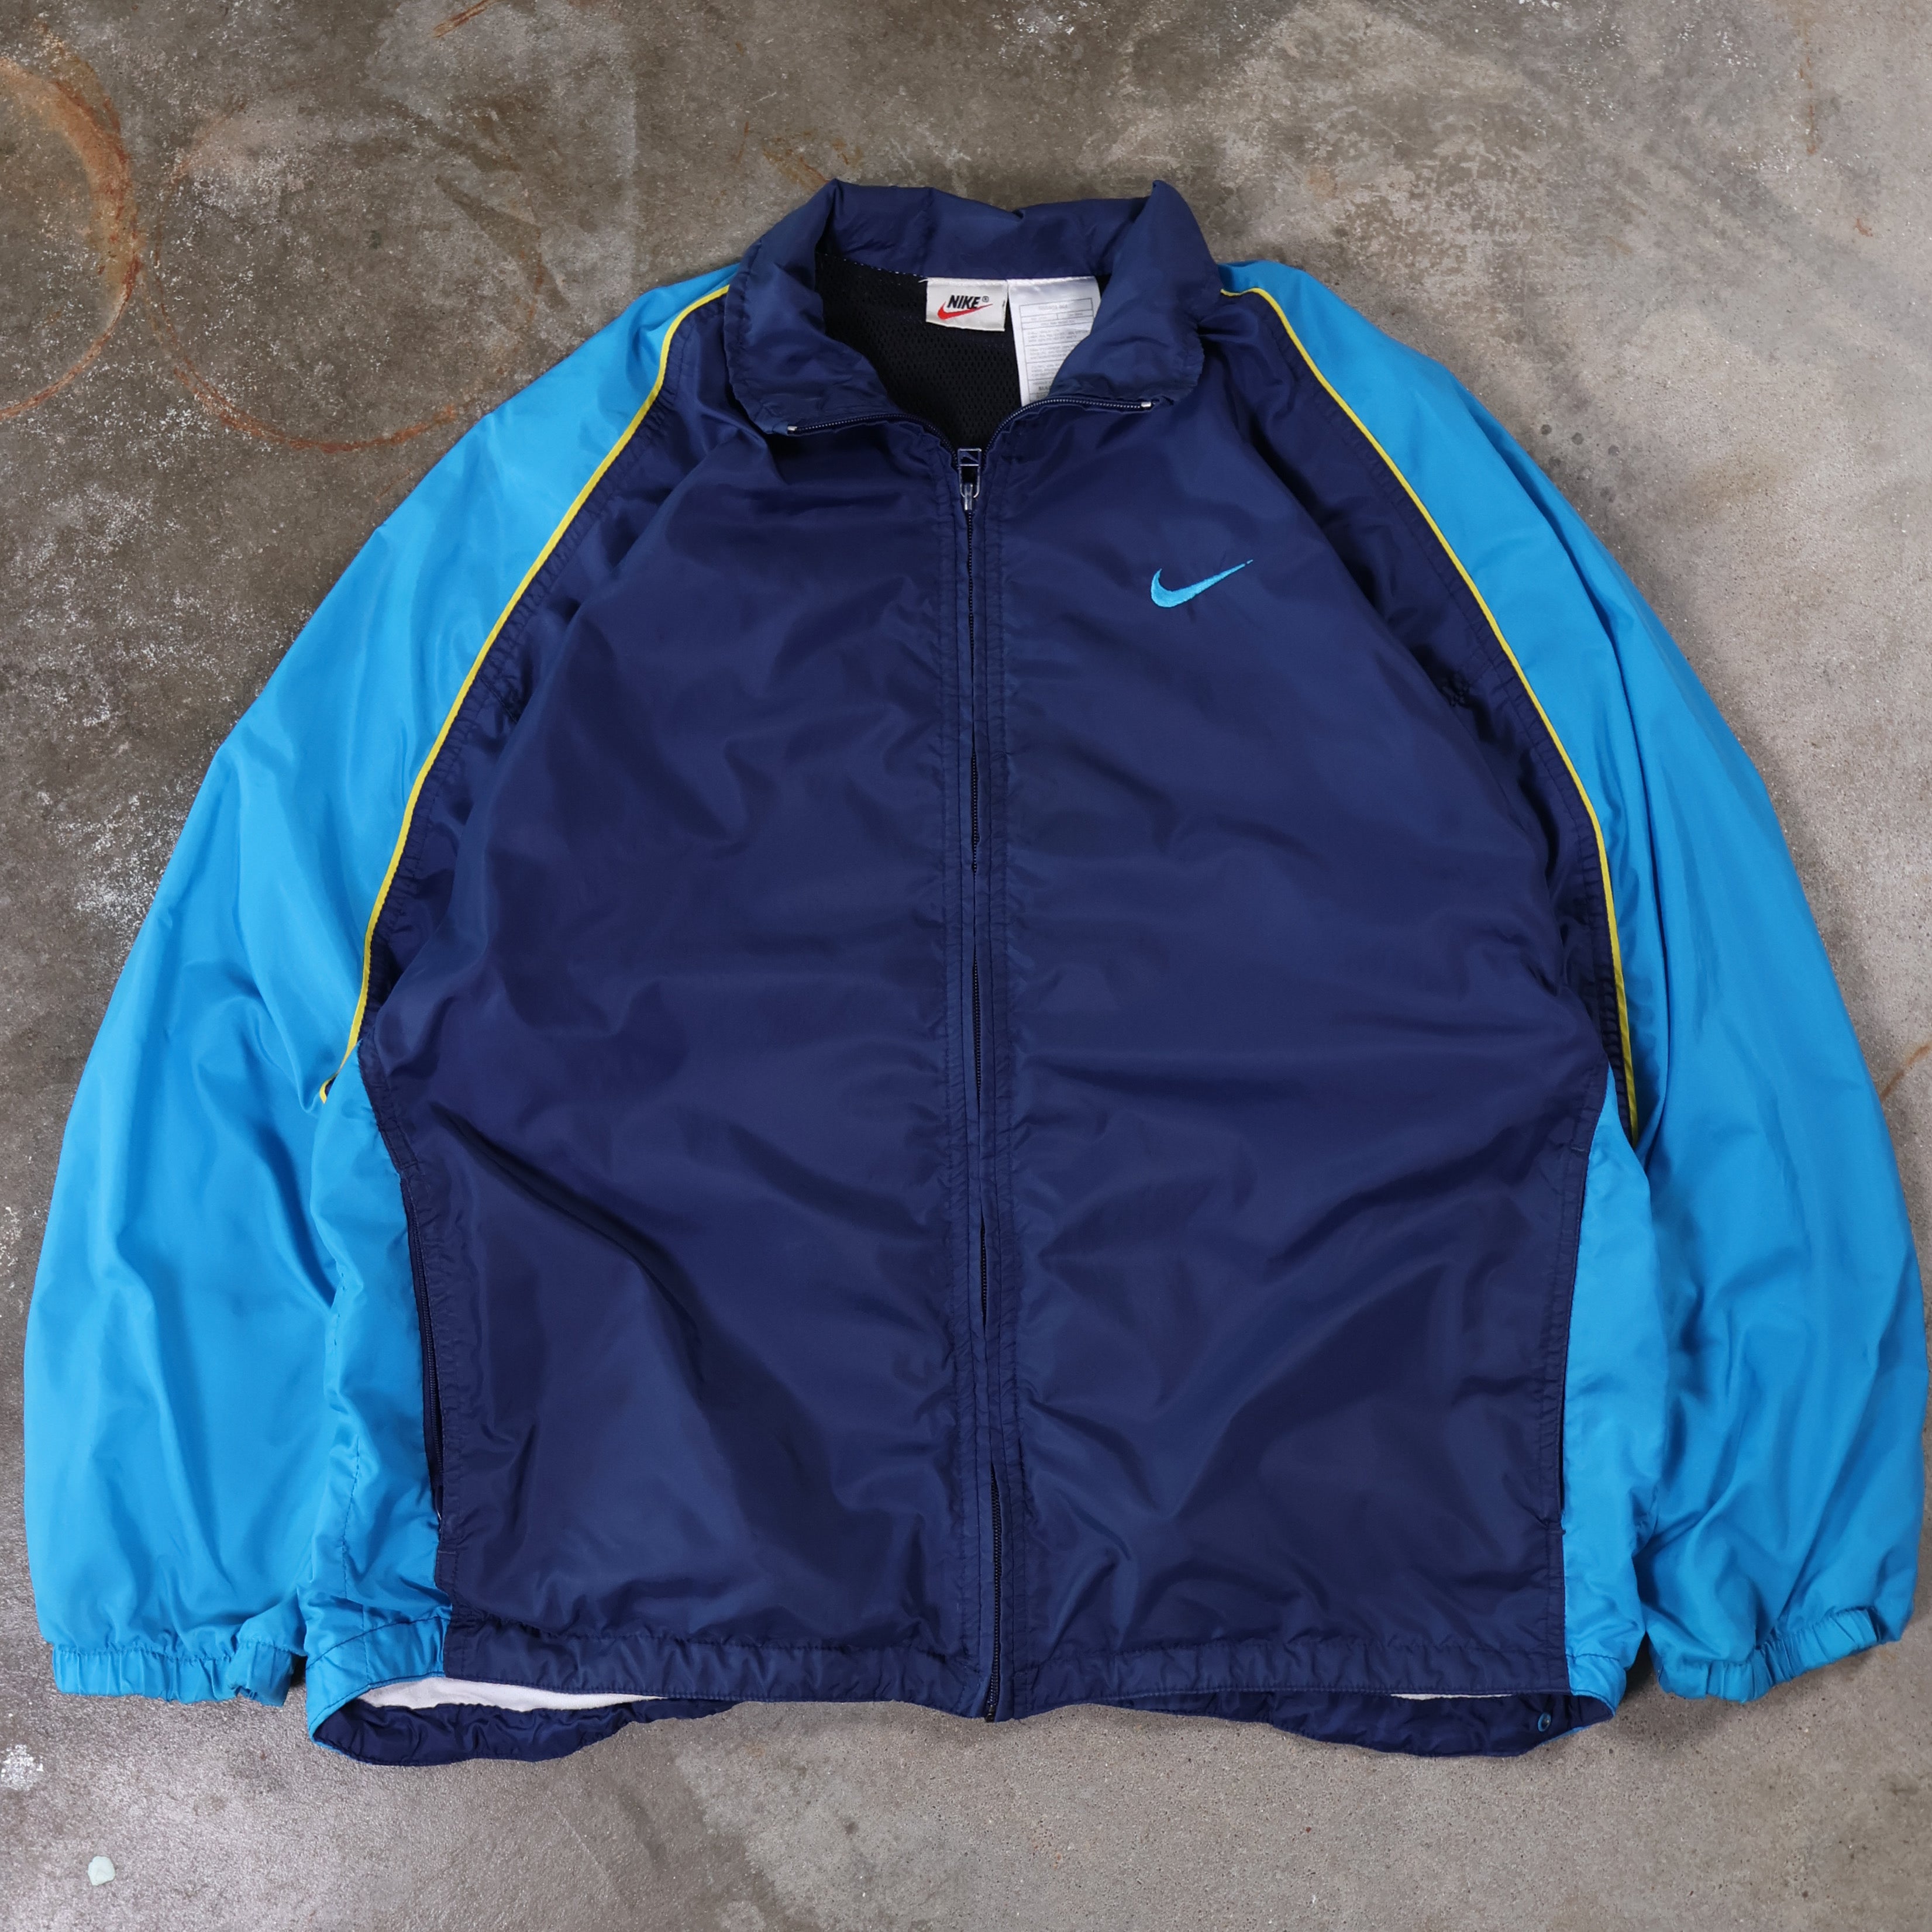 Blue Nike Windbreaker Jacket 90s (Small)